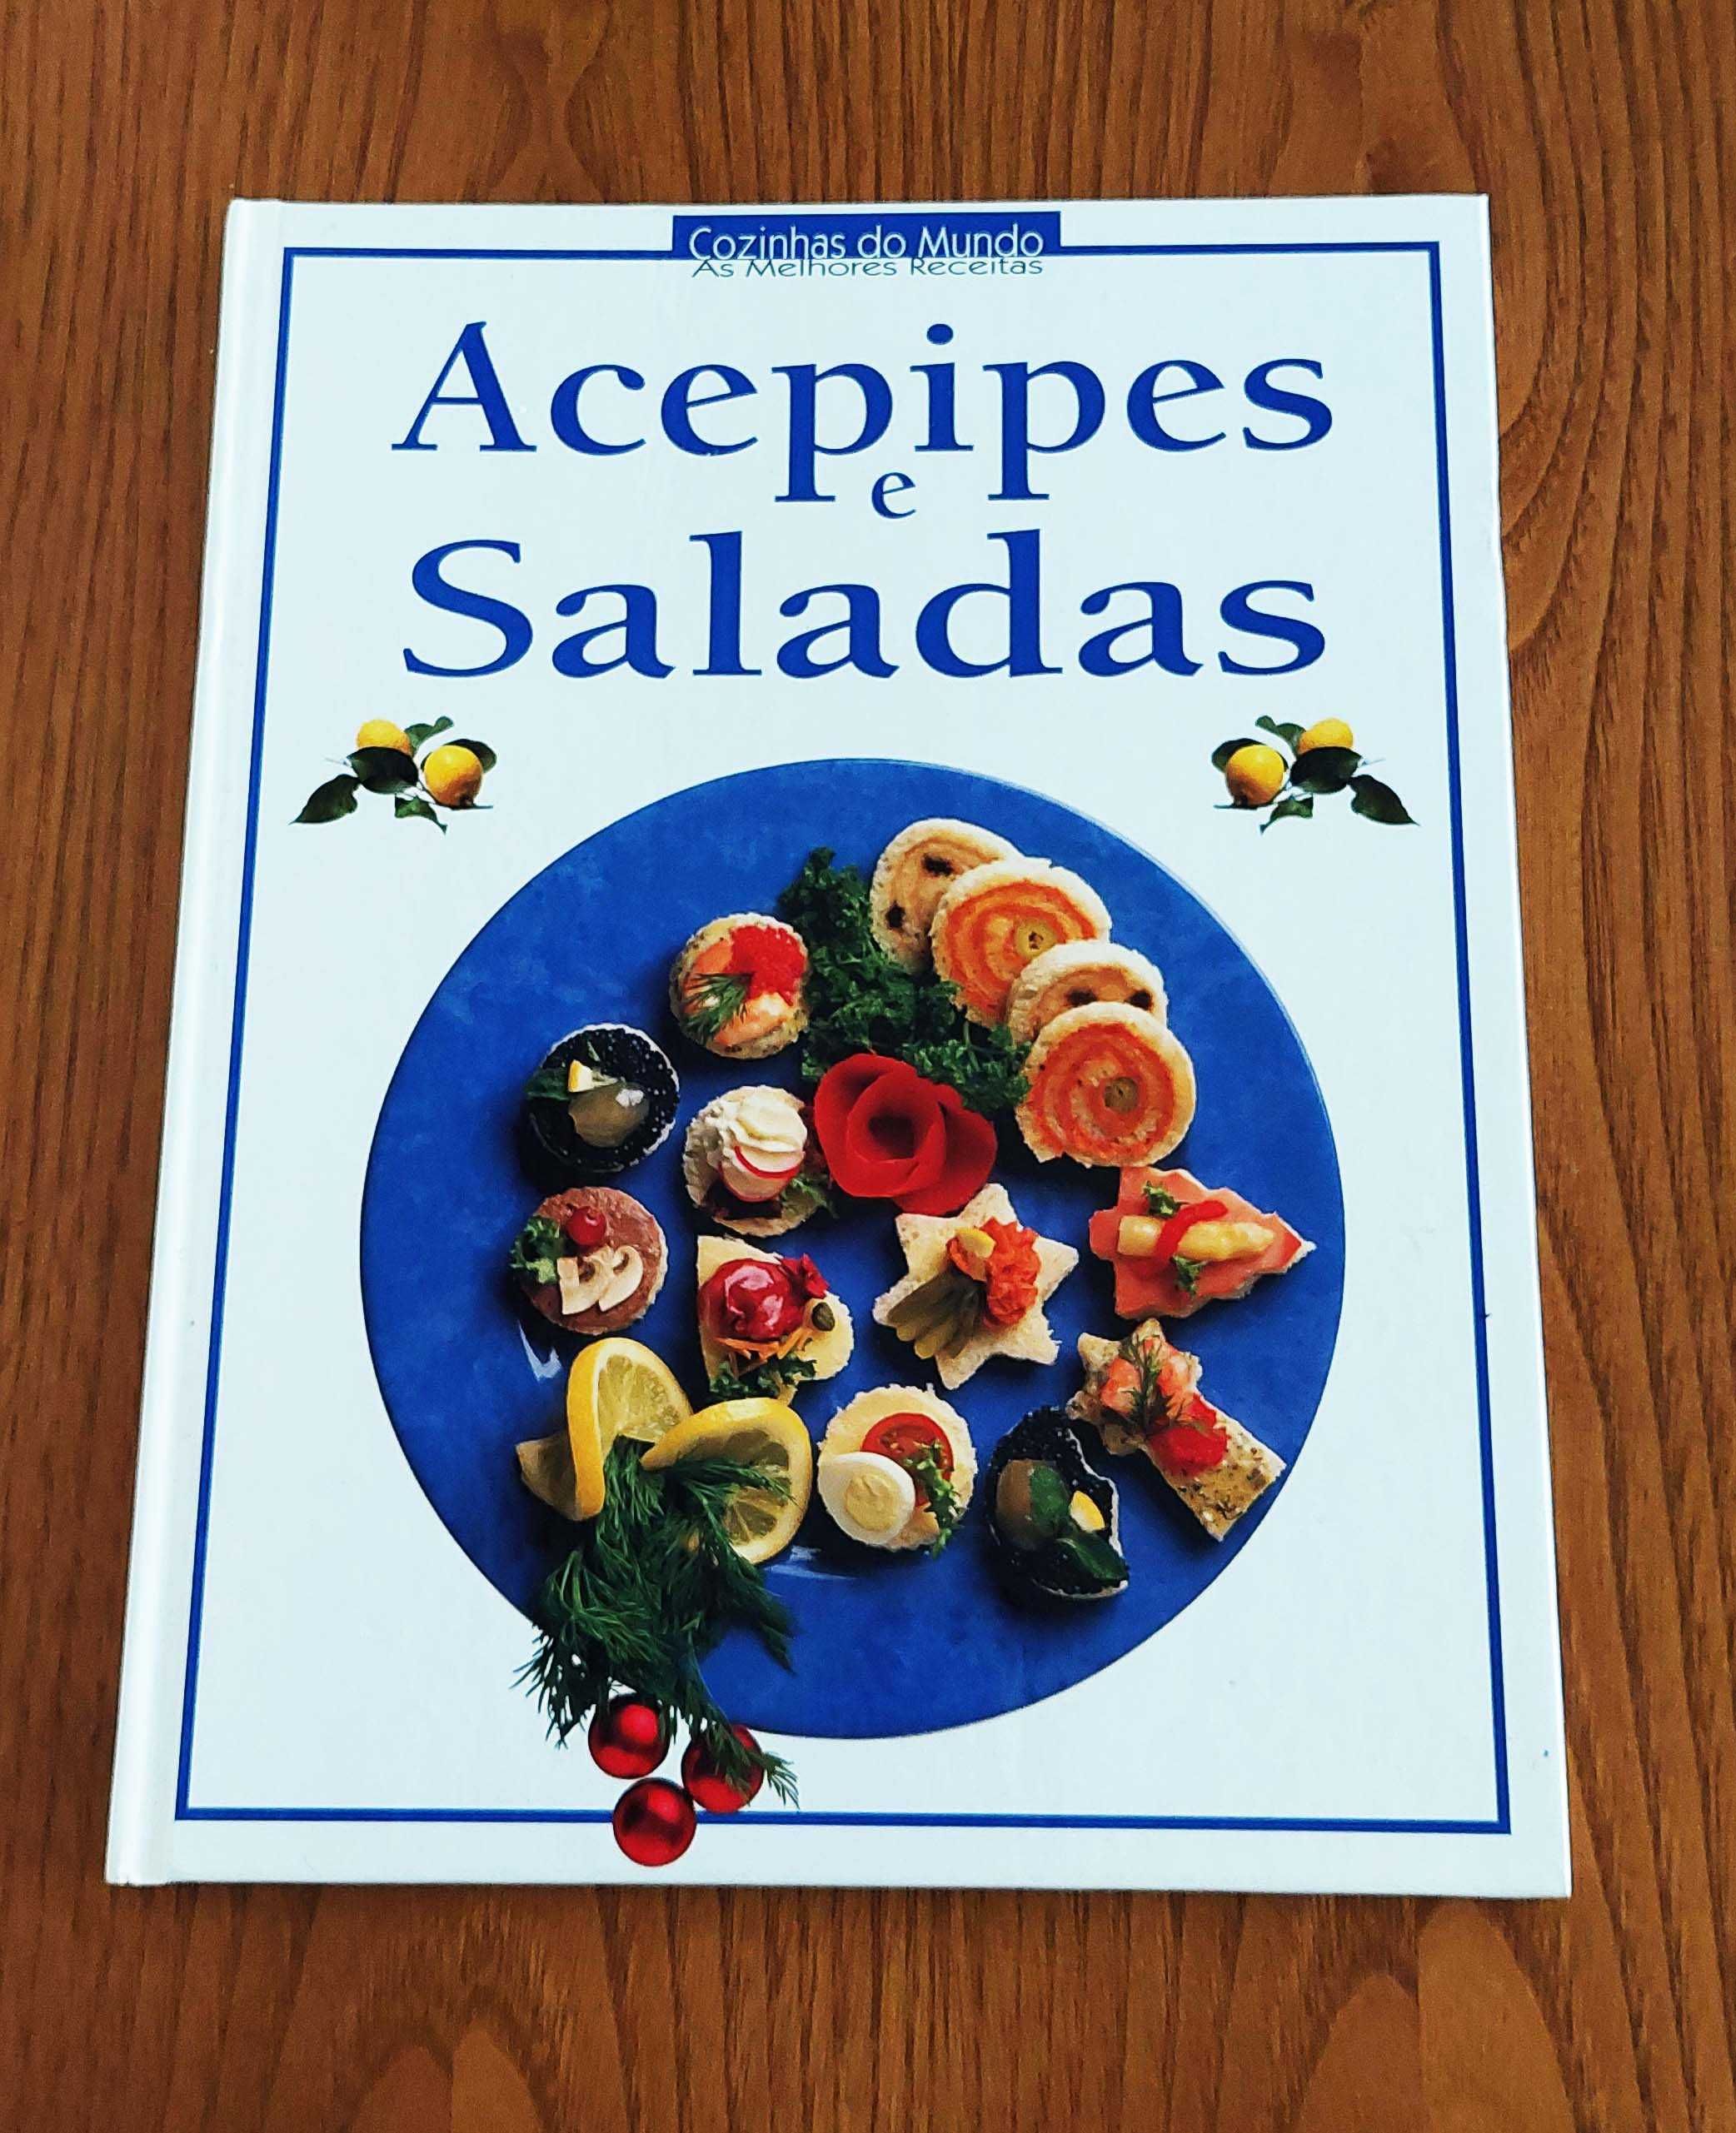 Cozinhas do mundo - Acepipes e saladas - as melhores receitas